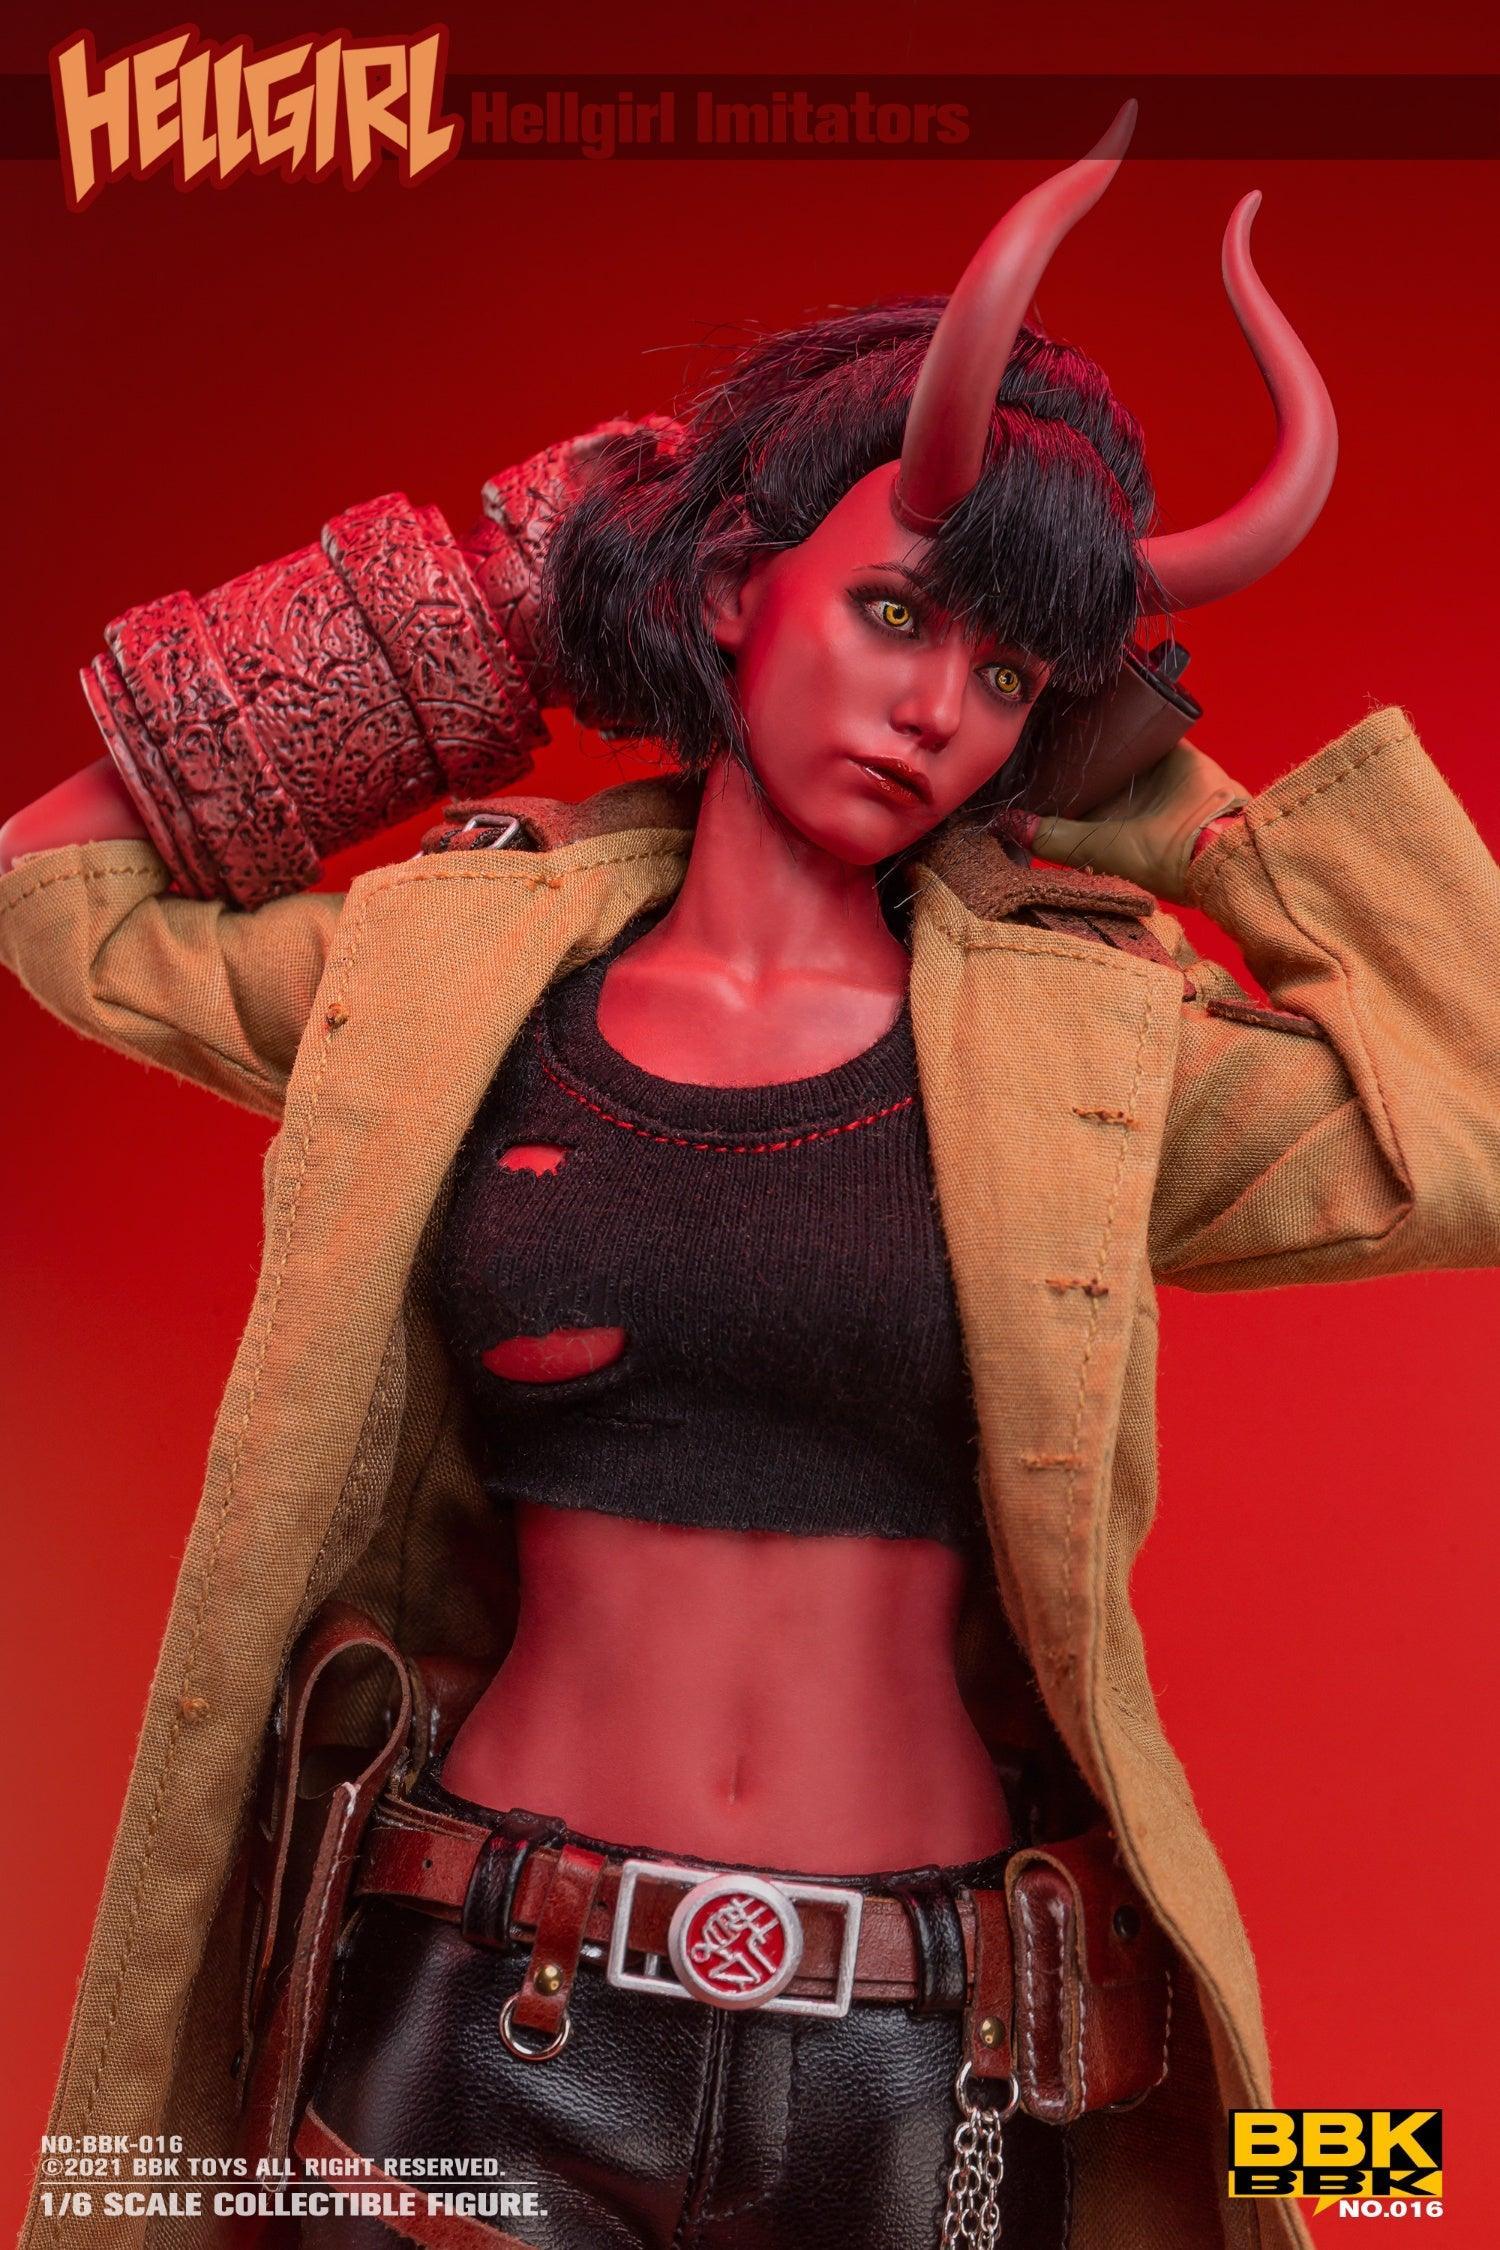 BBK - 1:6 Hellgirl Imitators Action Figure